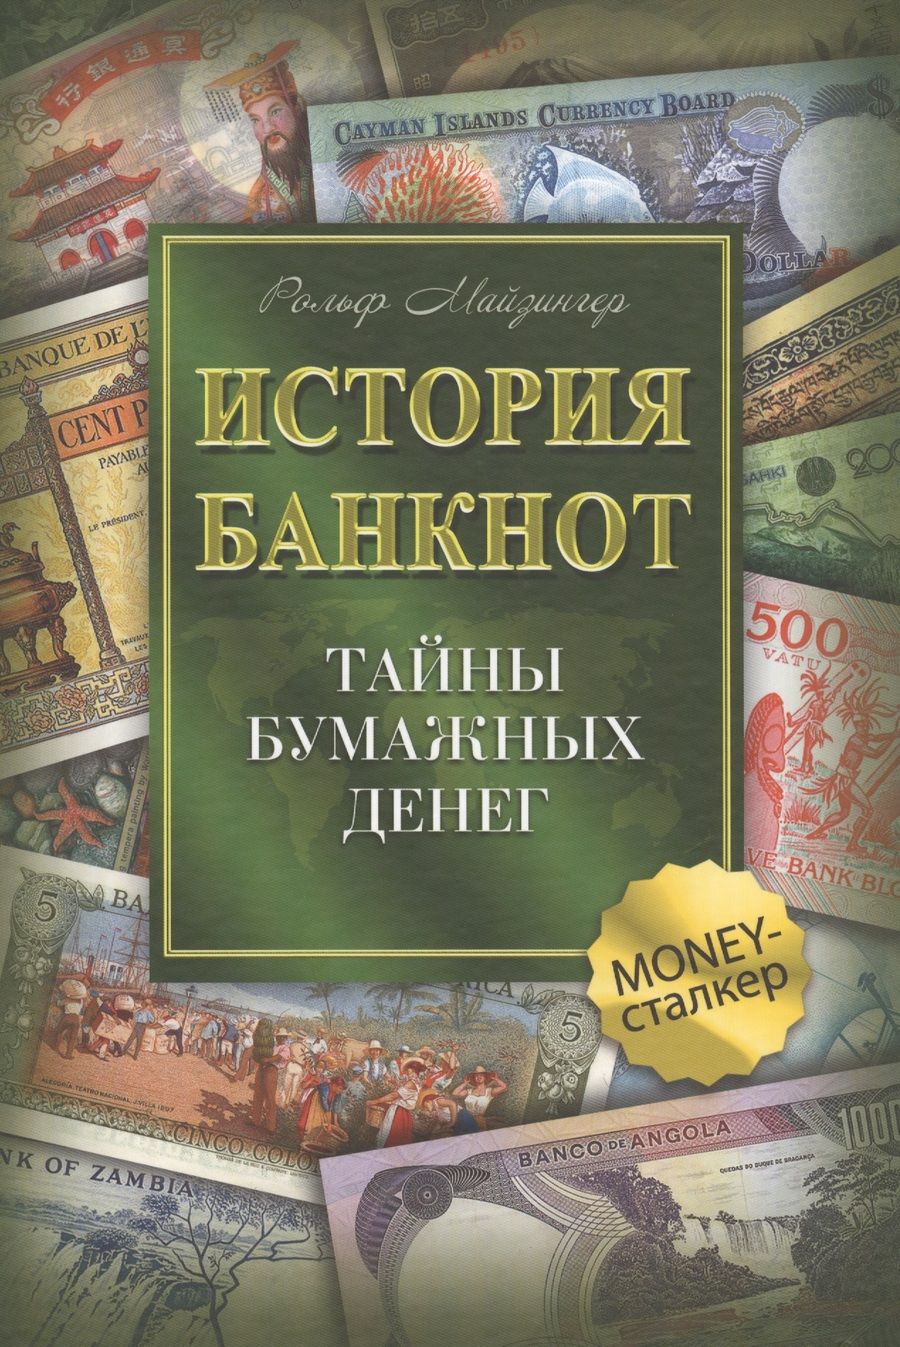 Обложка книги "Рольф Майзингер: История банкнот : тайны бумажных денег"